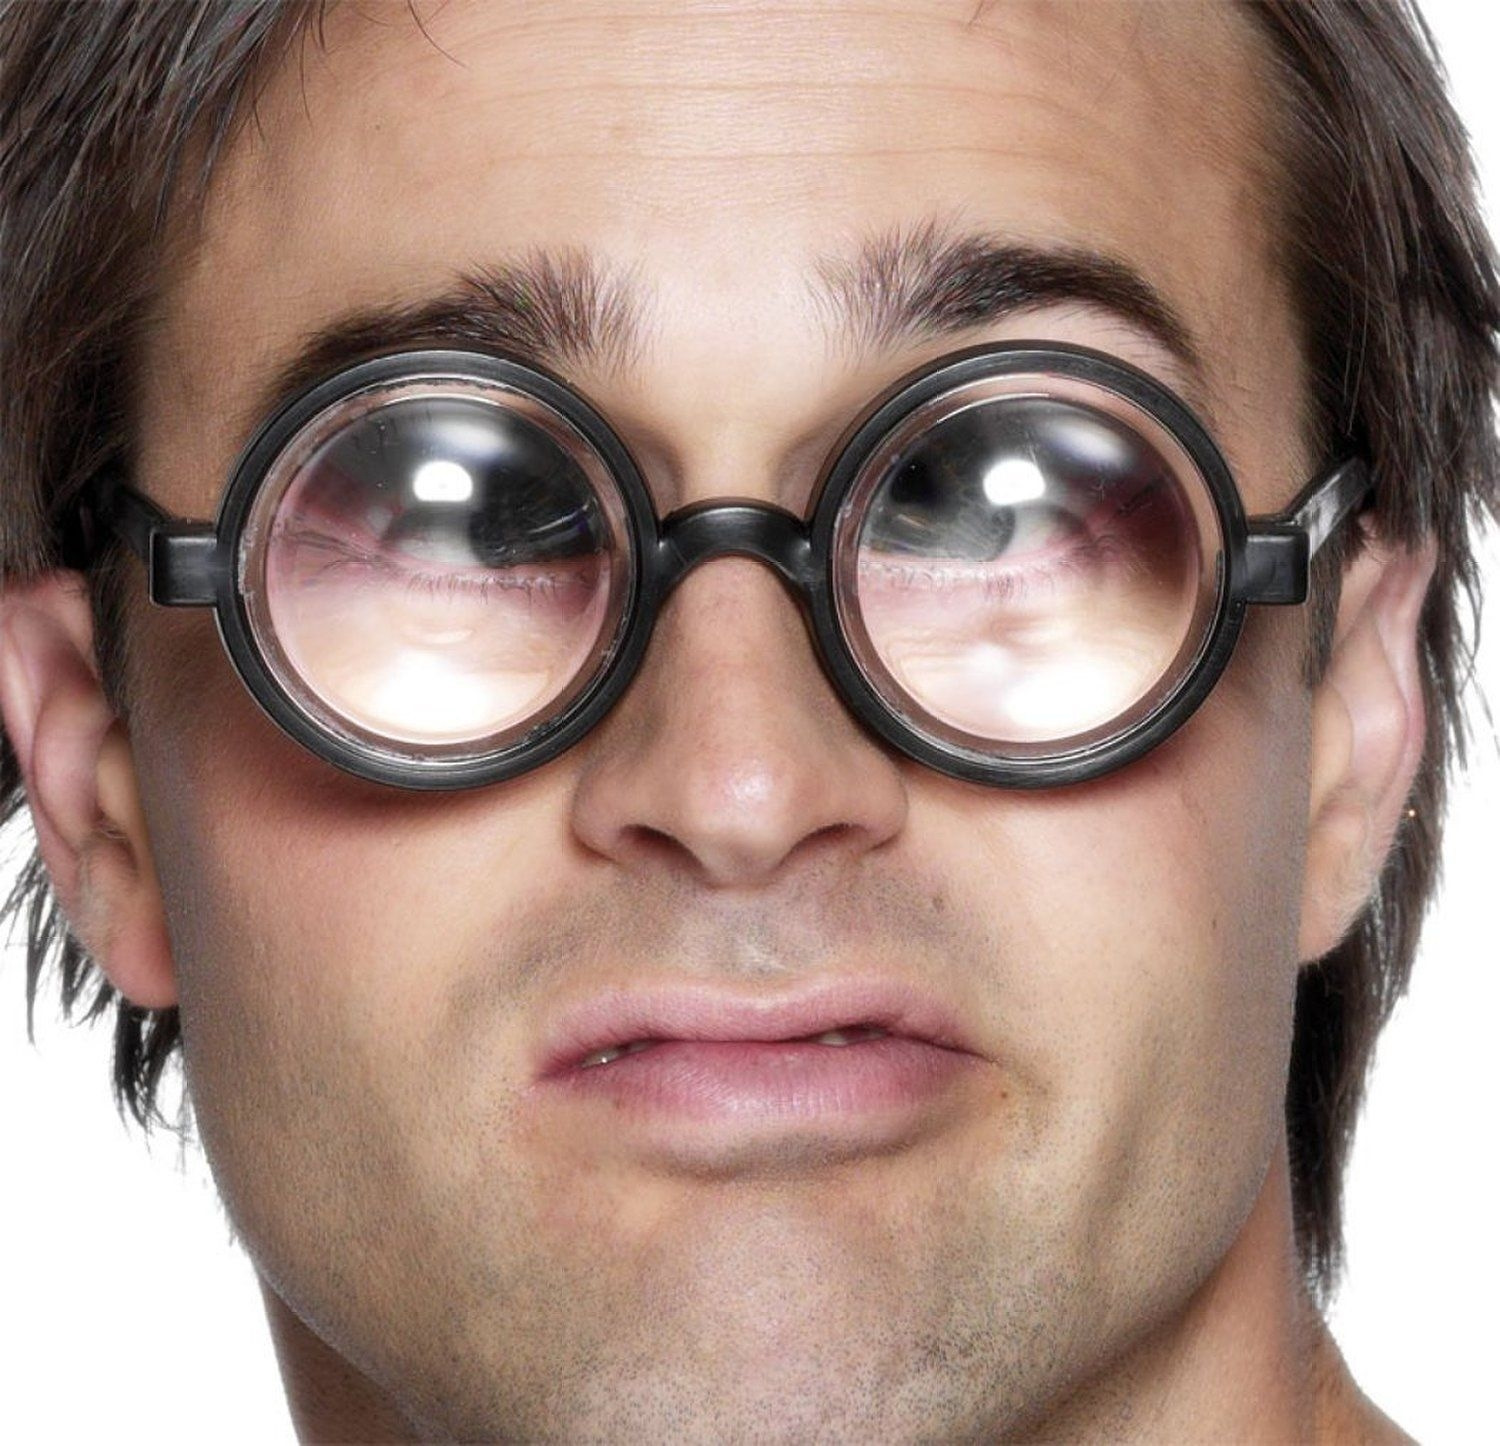 Зрение меньше 10. Очки с толстыми линзами. Огромные очки с толстыми линзами. Человек с большими очками. Очки с толстыми линзами прикол.